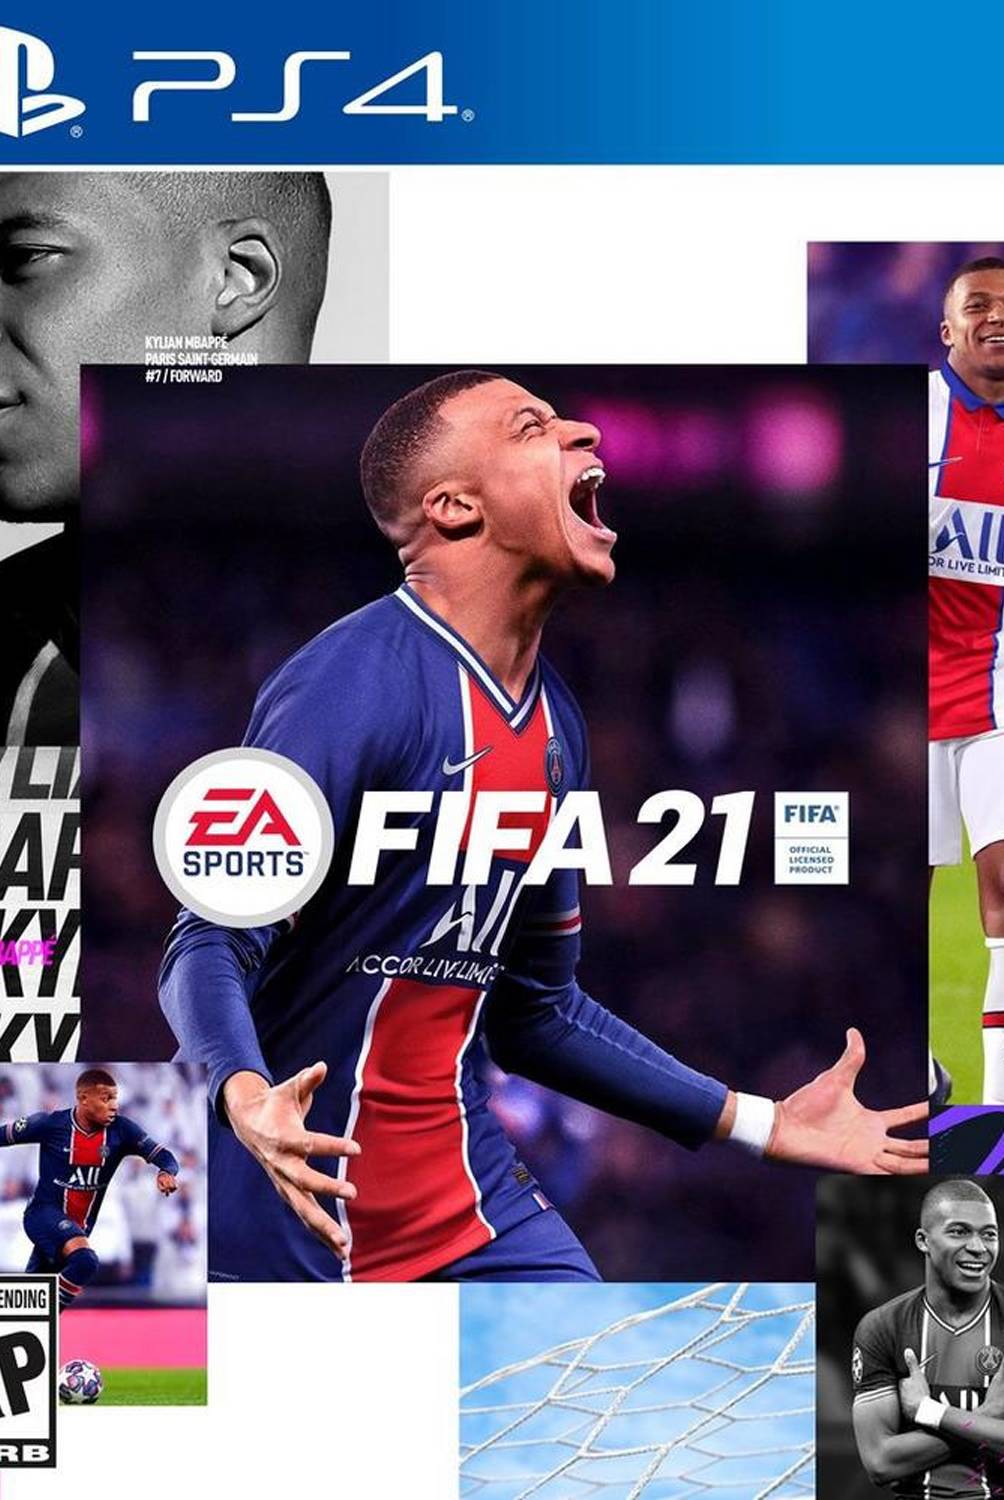 Electronic Arts - Videojuego Fifa 21 Video Juego Consola PS4 Playstation 4